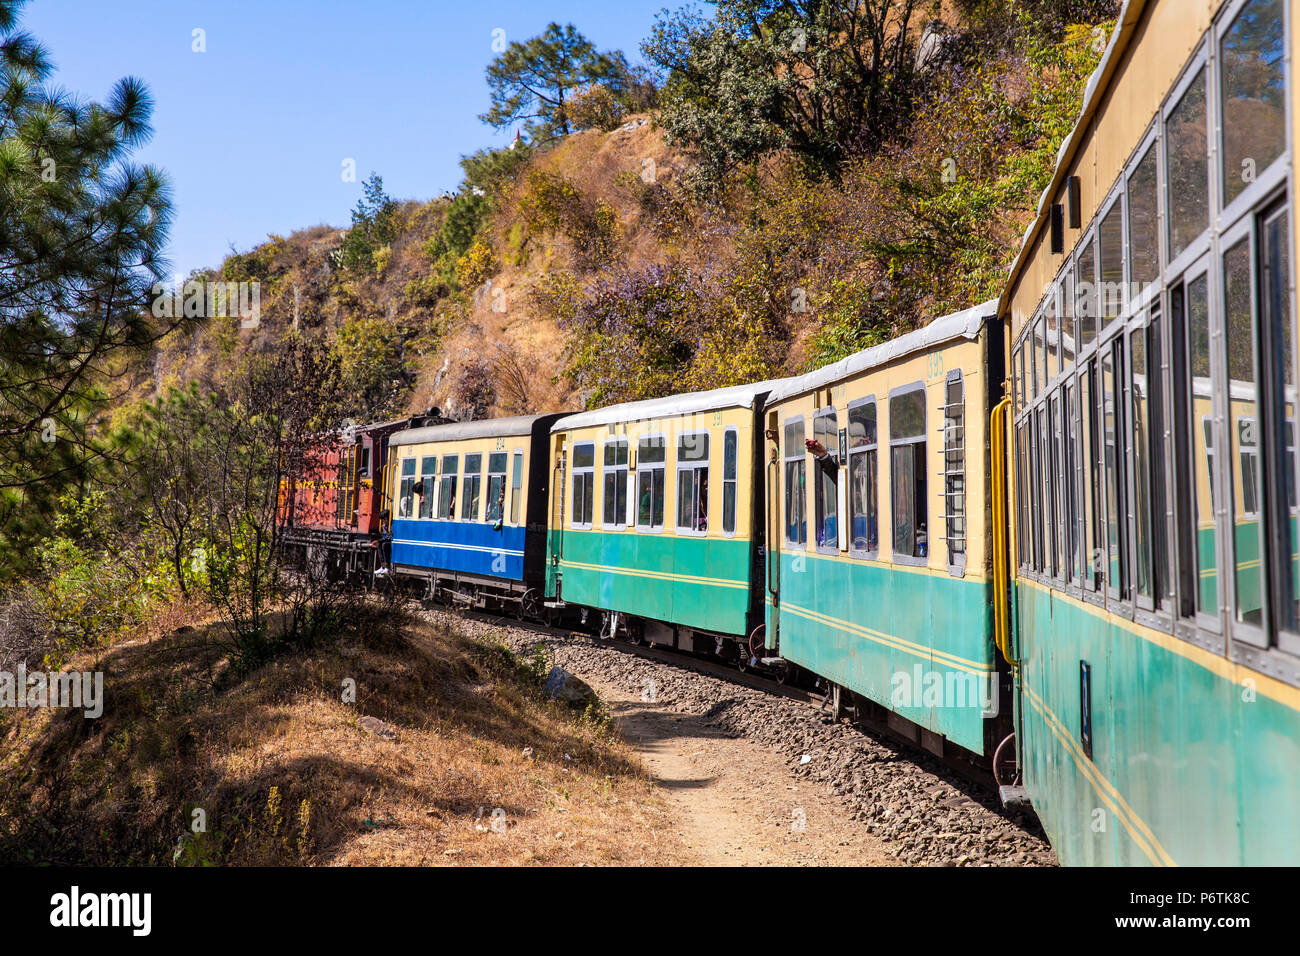 L'Inde, le nord-ouest de l'Inde , le Kalkaâ - Shimla Railway, l'Himalaya Reine petit train Banque D'Images